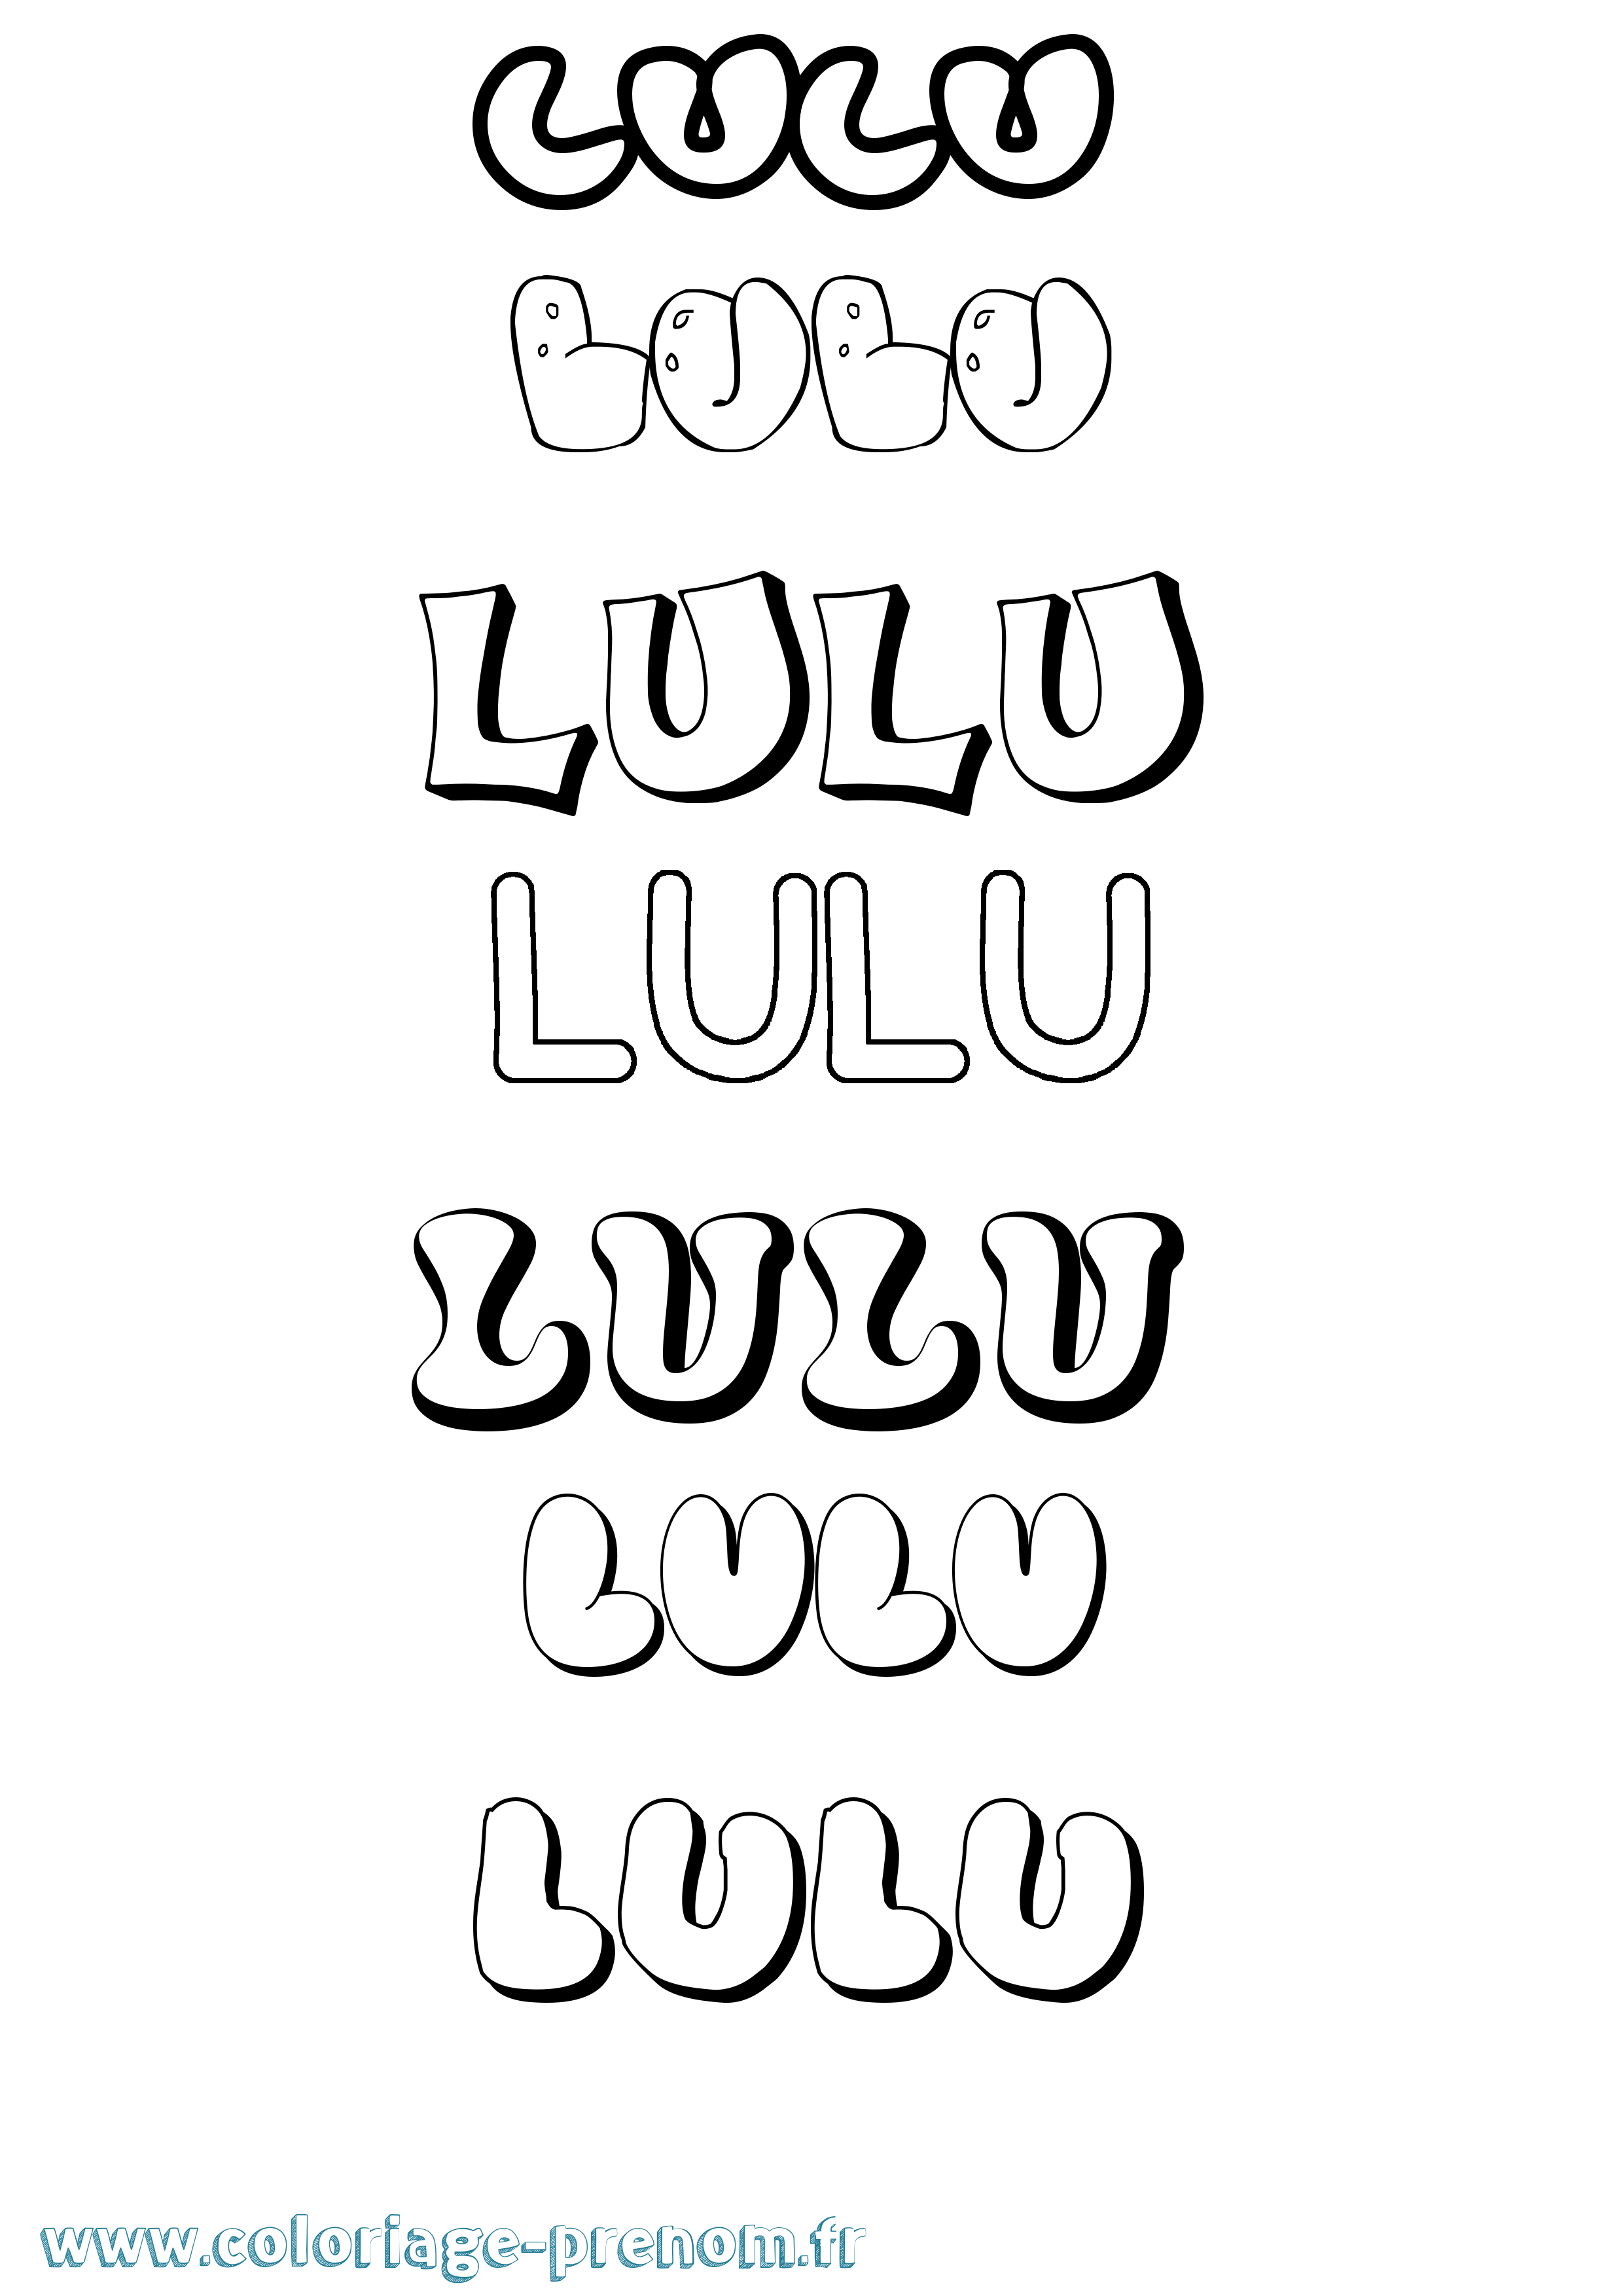 Coloriage prénom Lulu Bubble